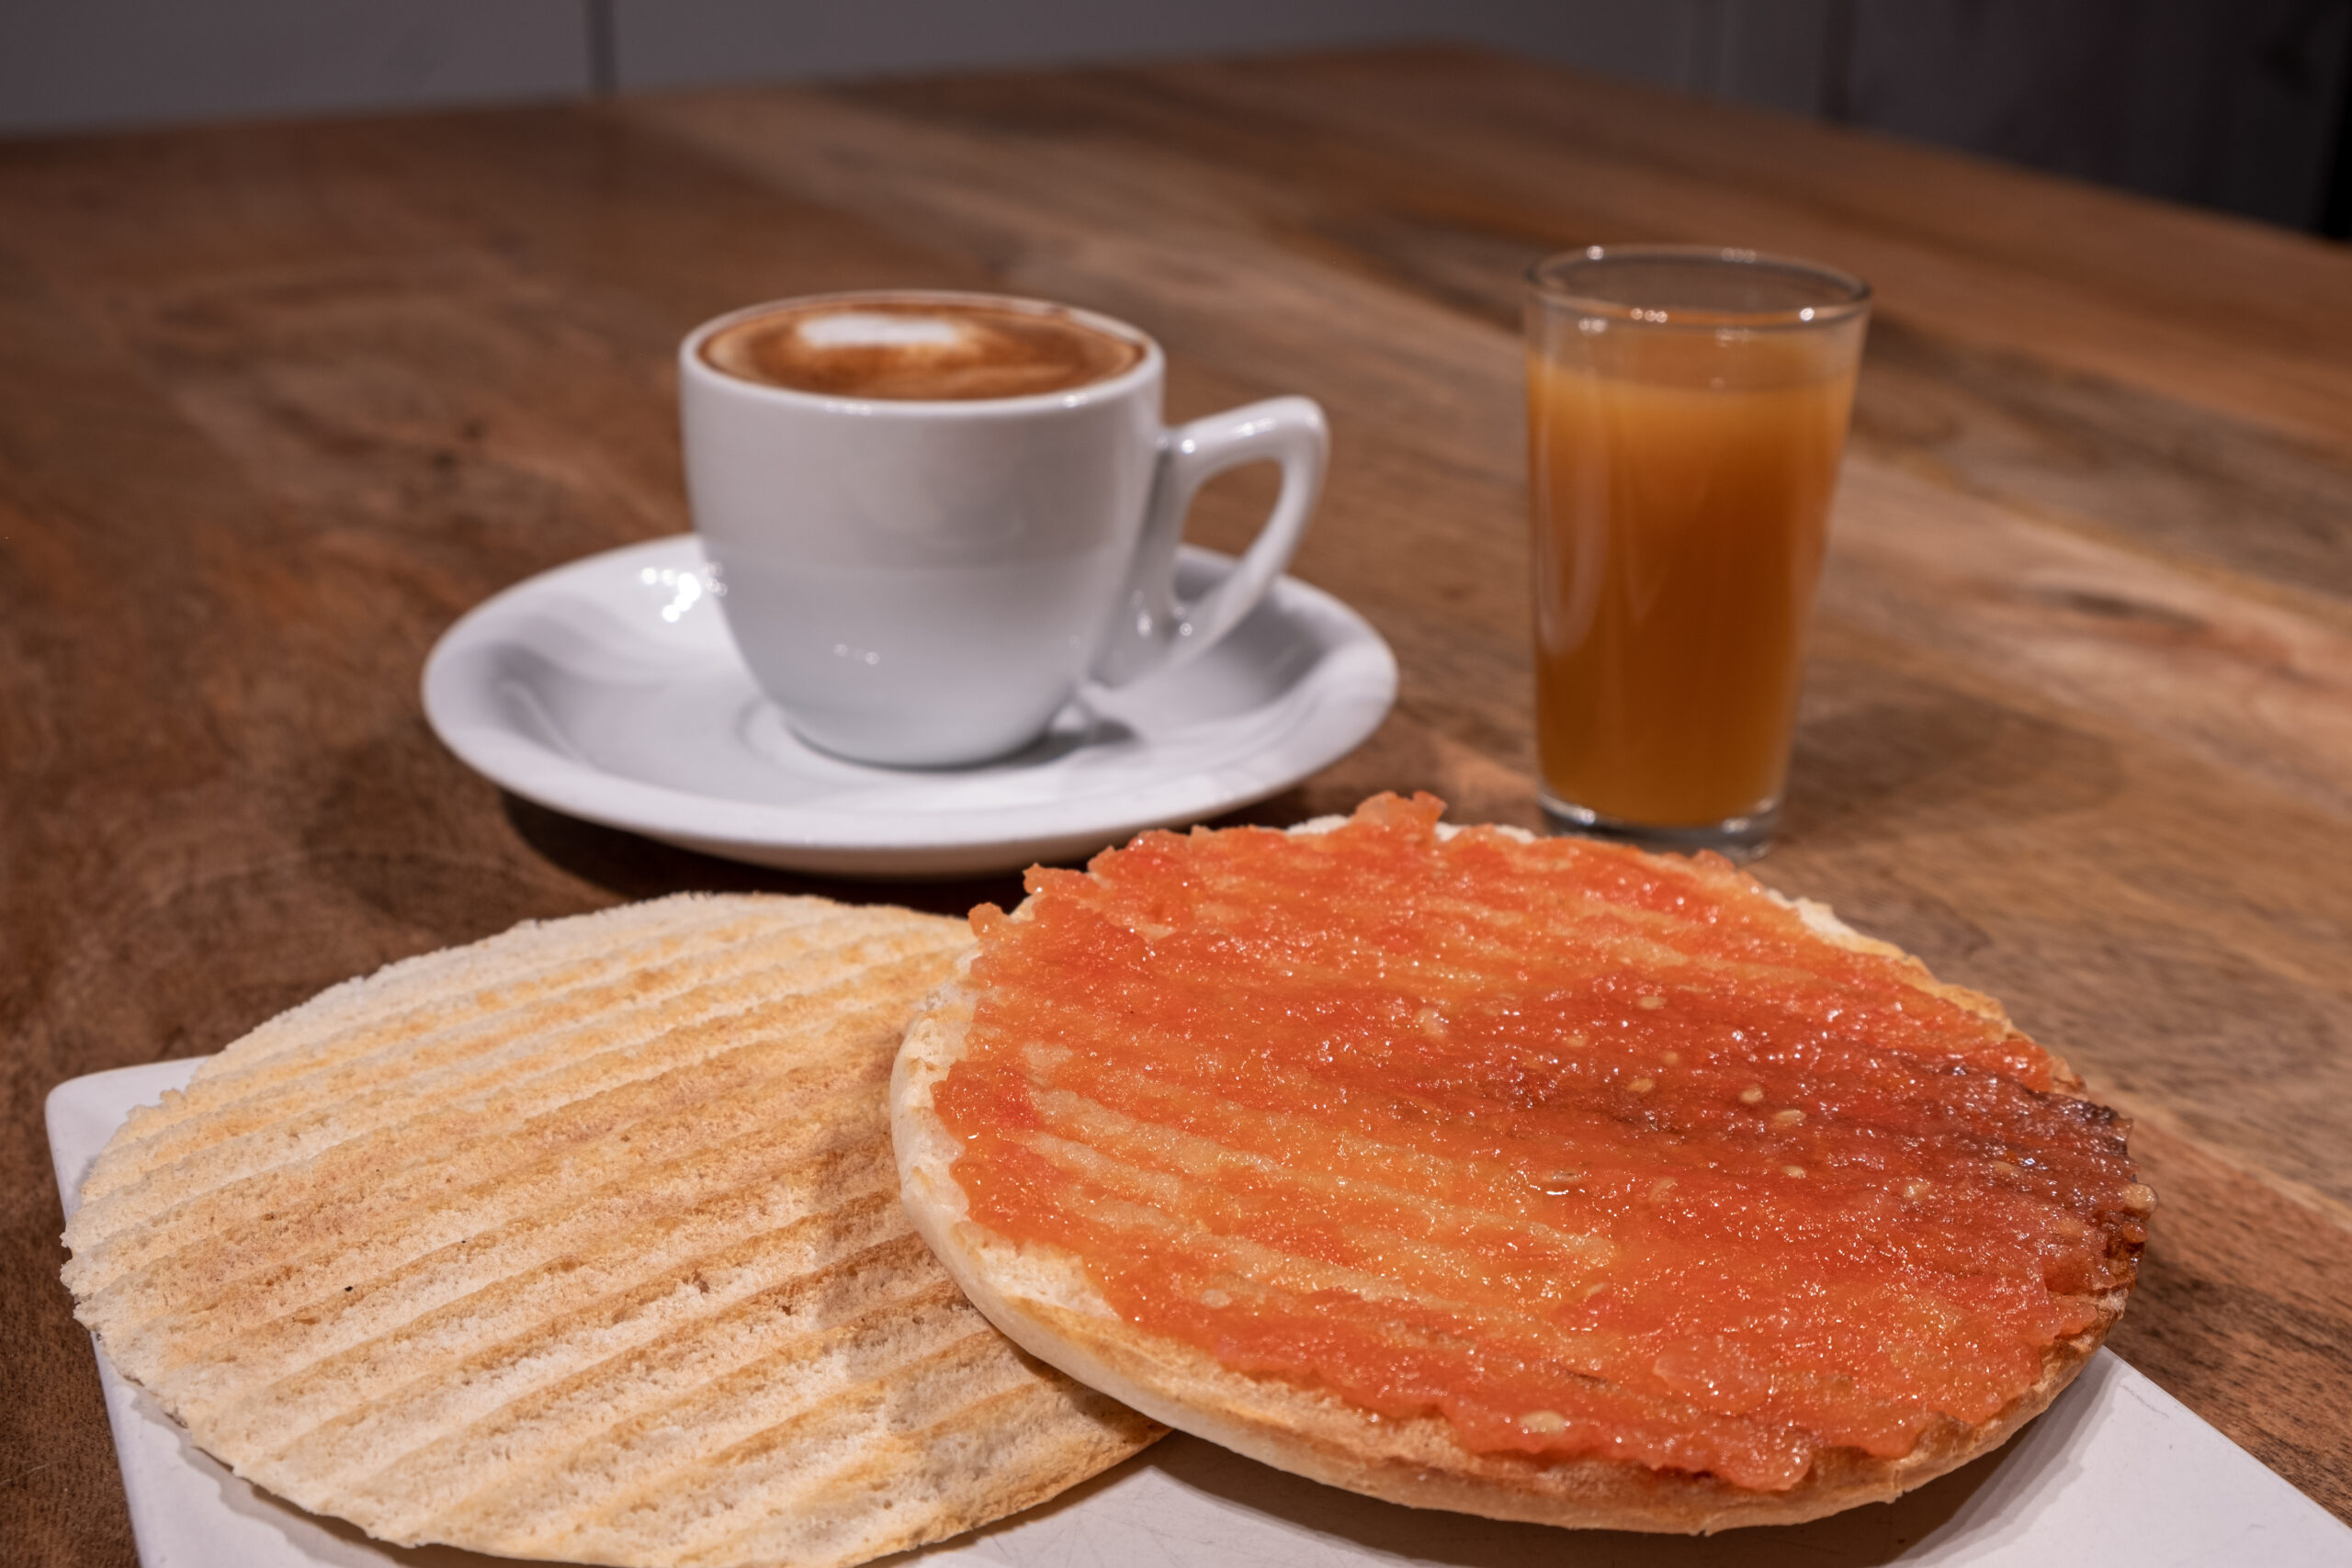 Desayuno Piraña con tomate natural untado sobre un mollete, zumo y café